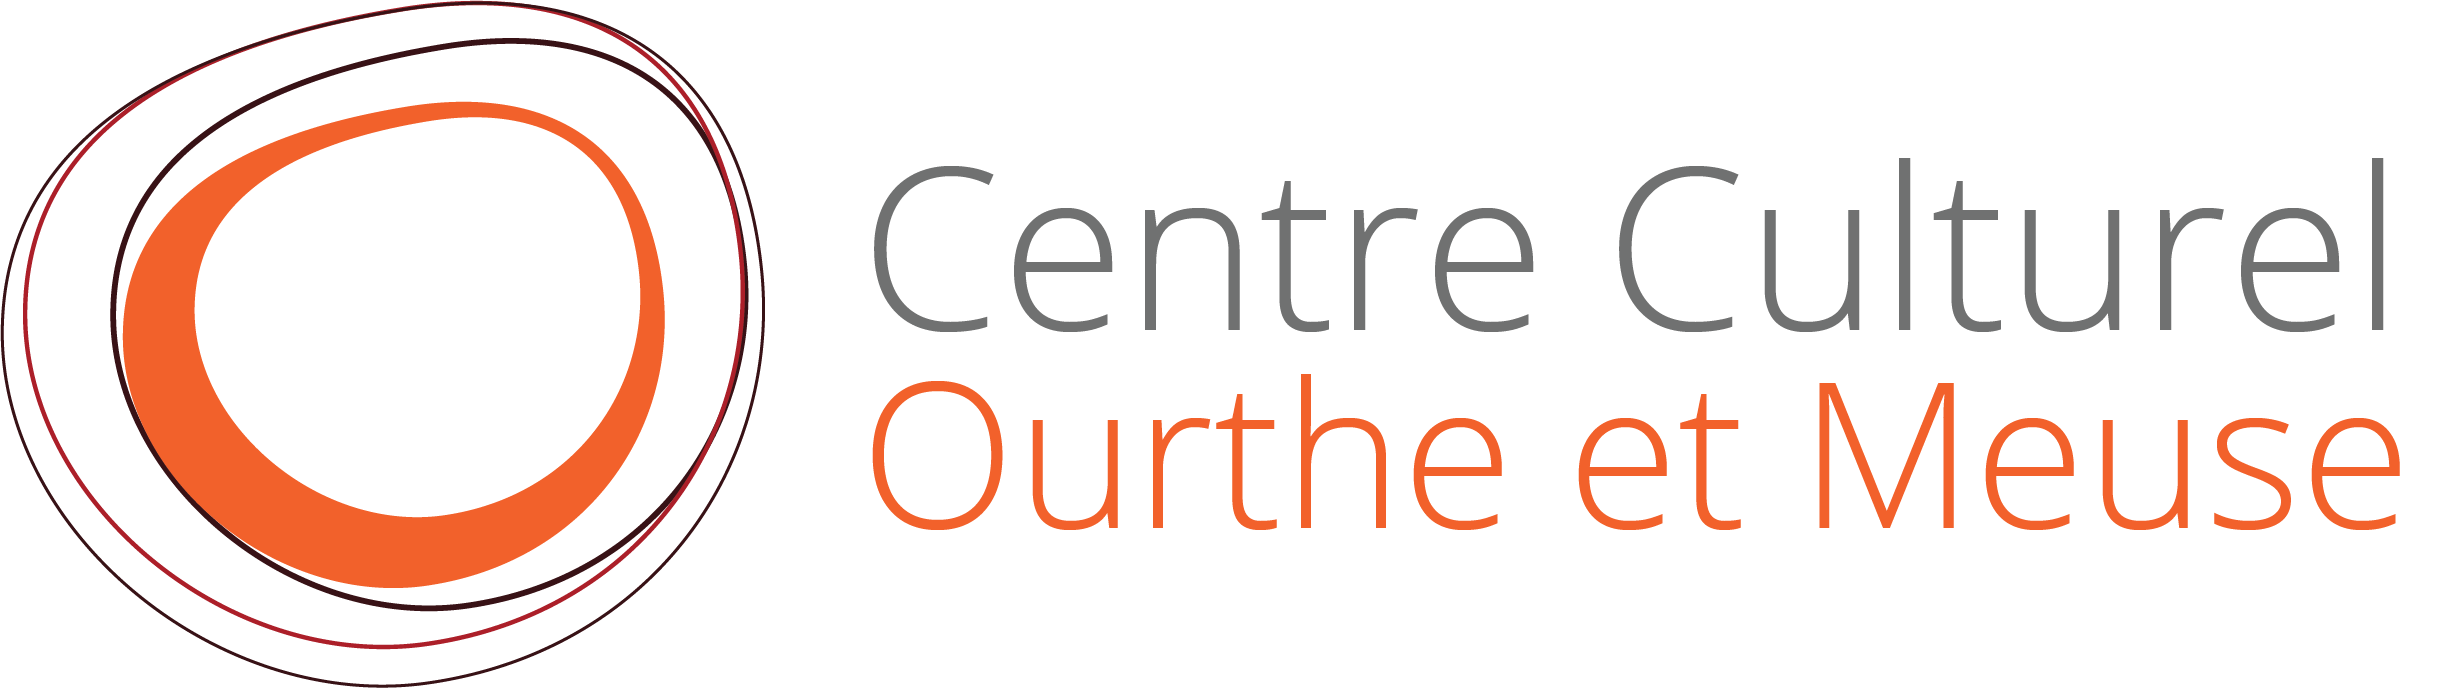 Centre Culturel Ourthe et Meuse